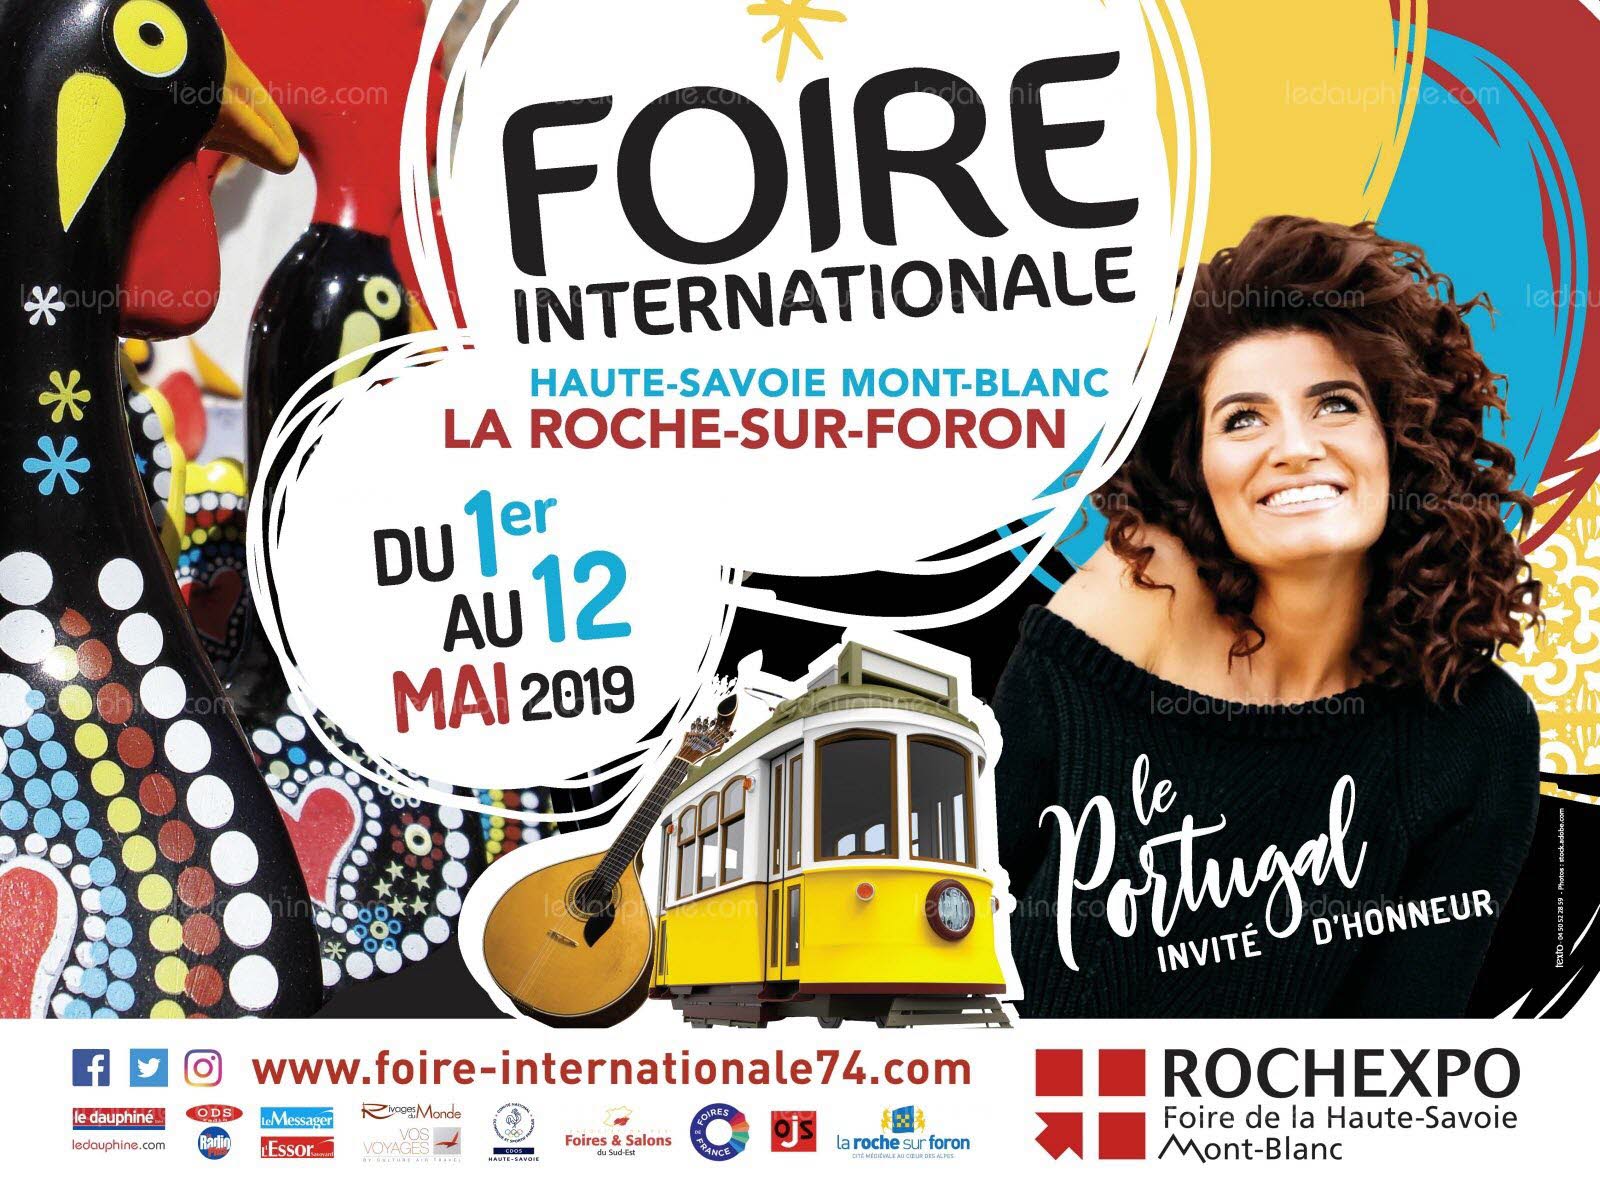 La Foire de la Roche-sur-Foron, il n’y manque rien… sinon votre visite !